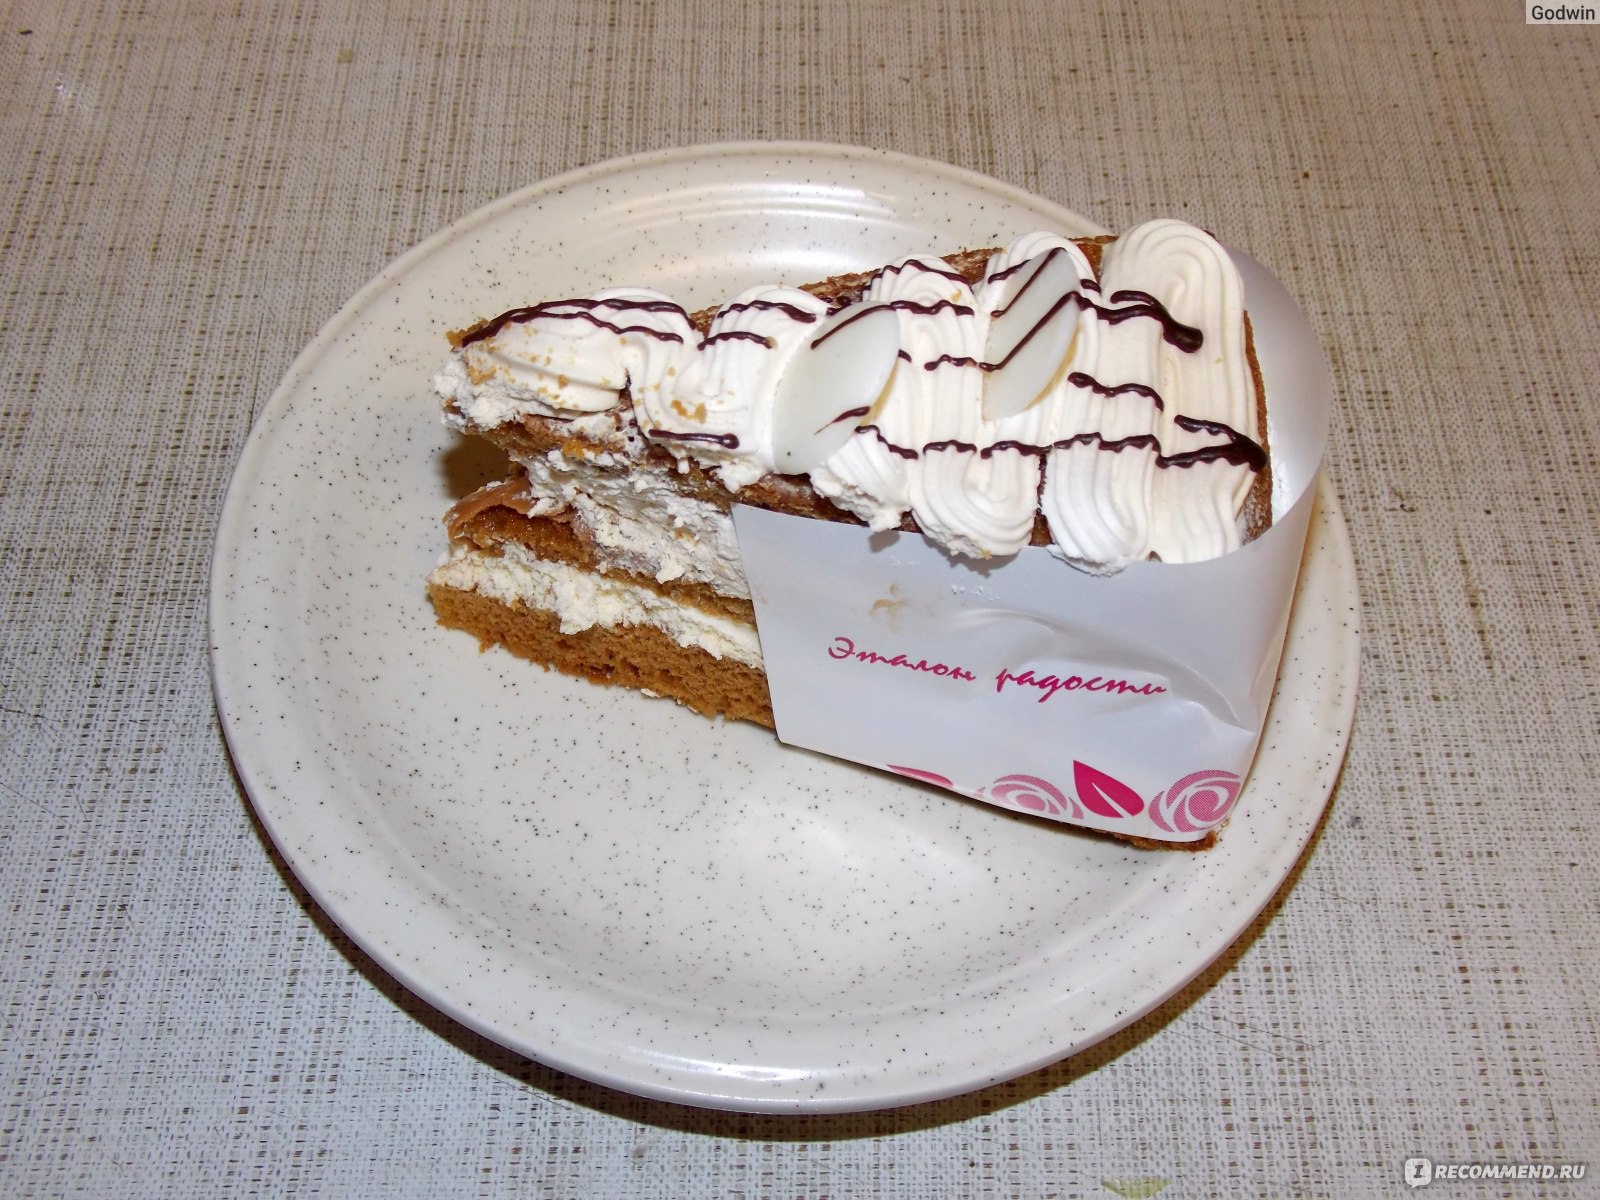 Торт медовый со сливками - вкусный и красиво украшен. 